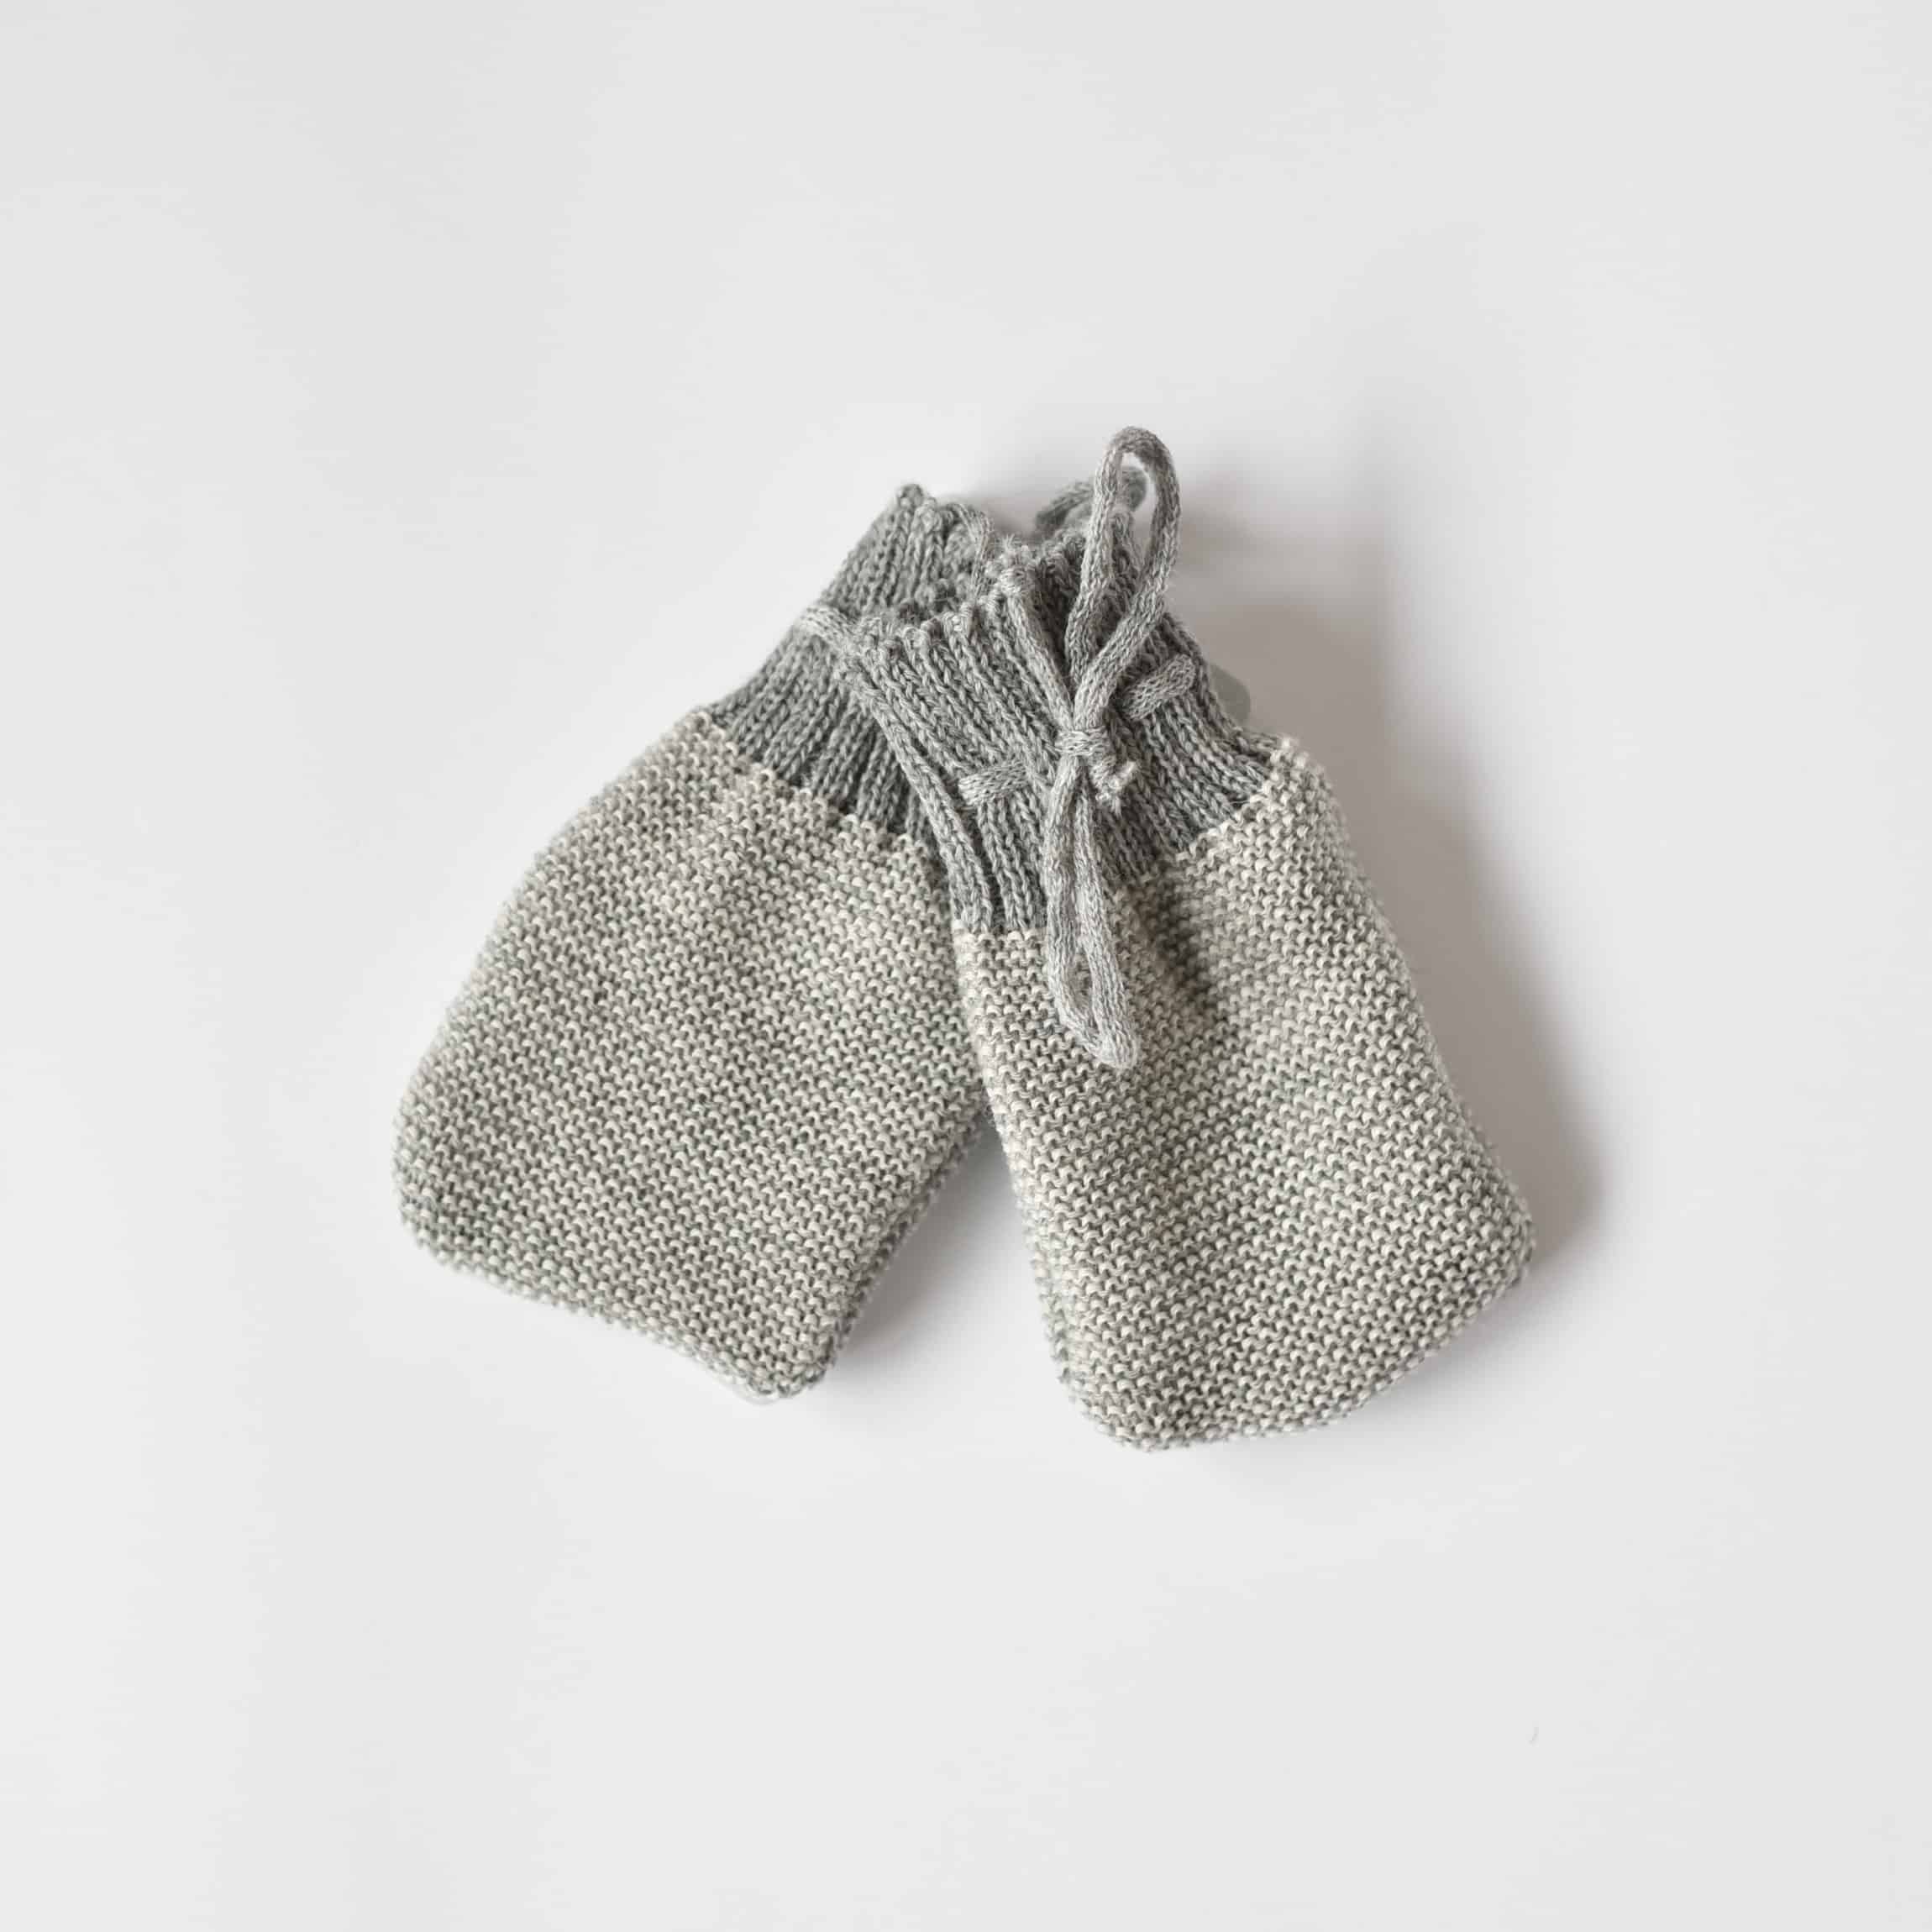 Moufles bébé en laine mérinos tricotée bio Disana gris clair